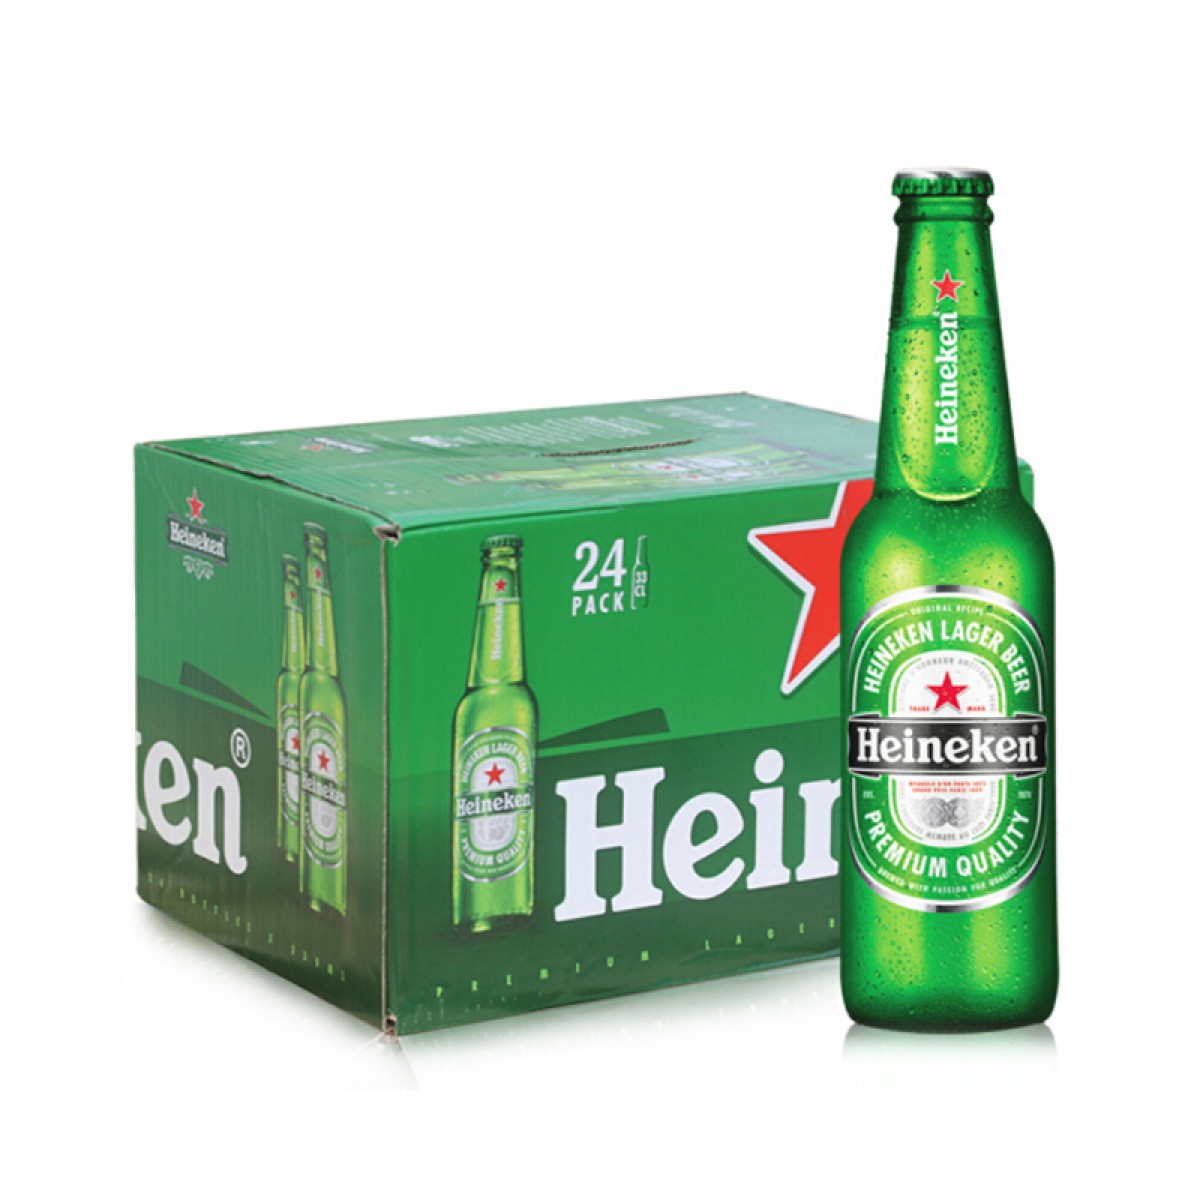 喜力啤酒 Heineken 喜力小星星版 原装 进口啤酒 330mlX24瓶 整箱